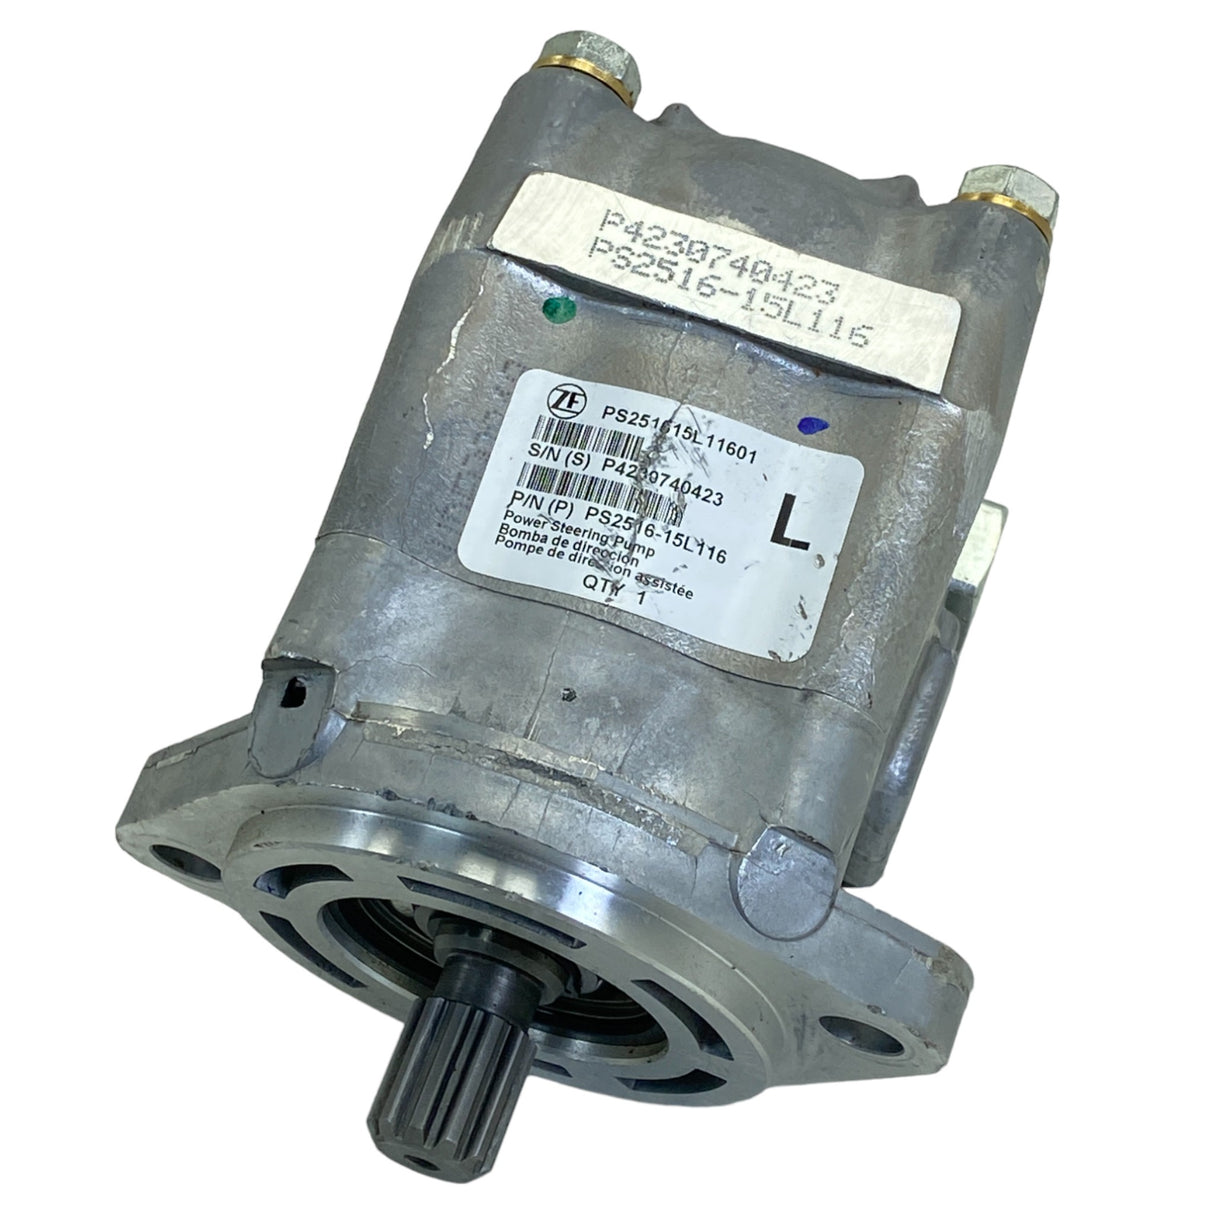 PS2516-15L116 Genuine Kenworth Power Steering Pump.